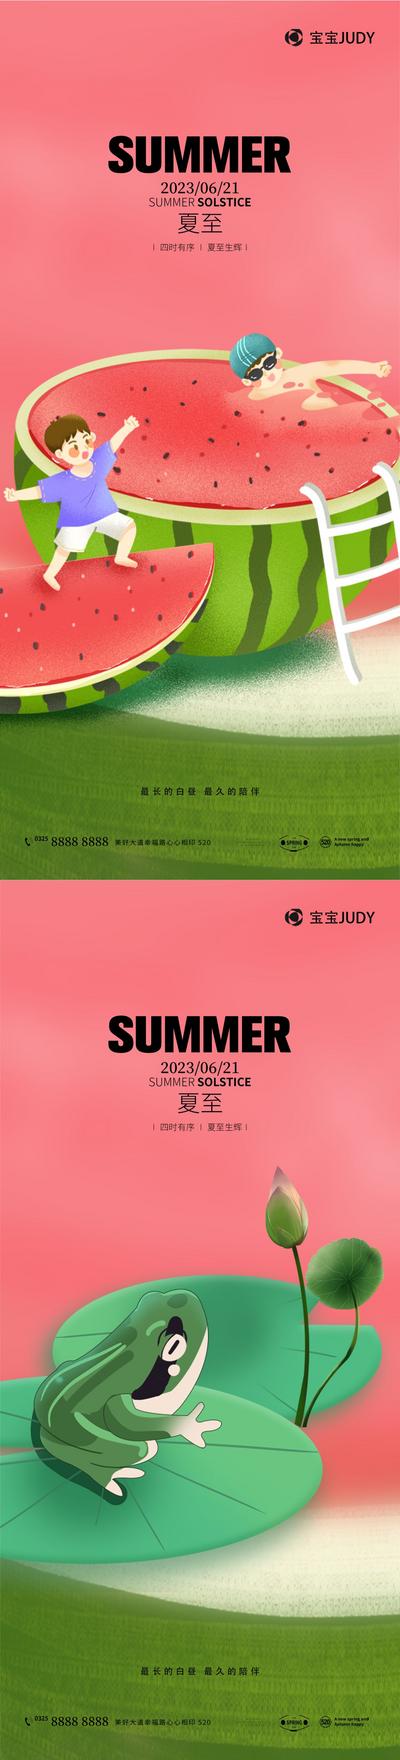 南门网 广告 海报 地产 夏至 创意 单图 夏天 清凉 冰爽 冰凉 西瓜 简约 清新 水果 立夏 合成 酷暑 系列